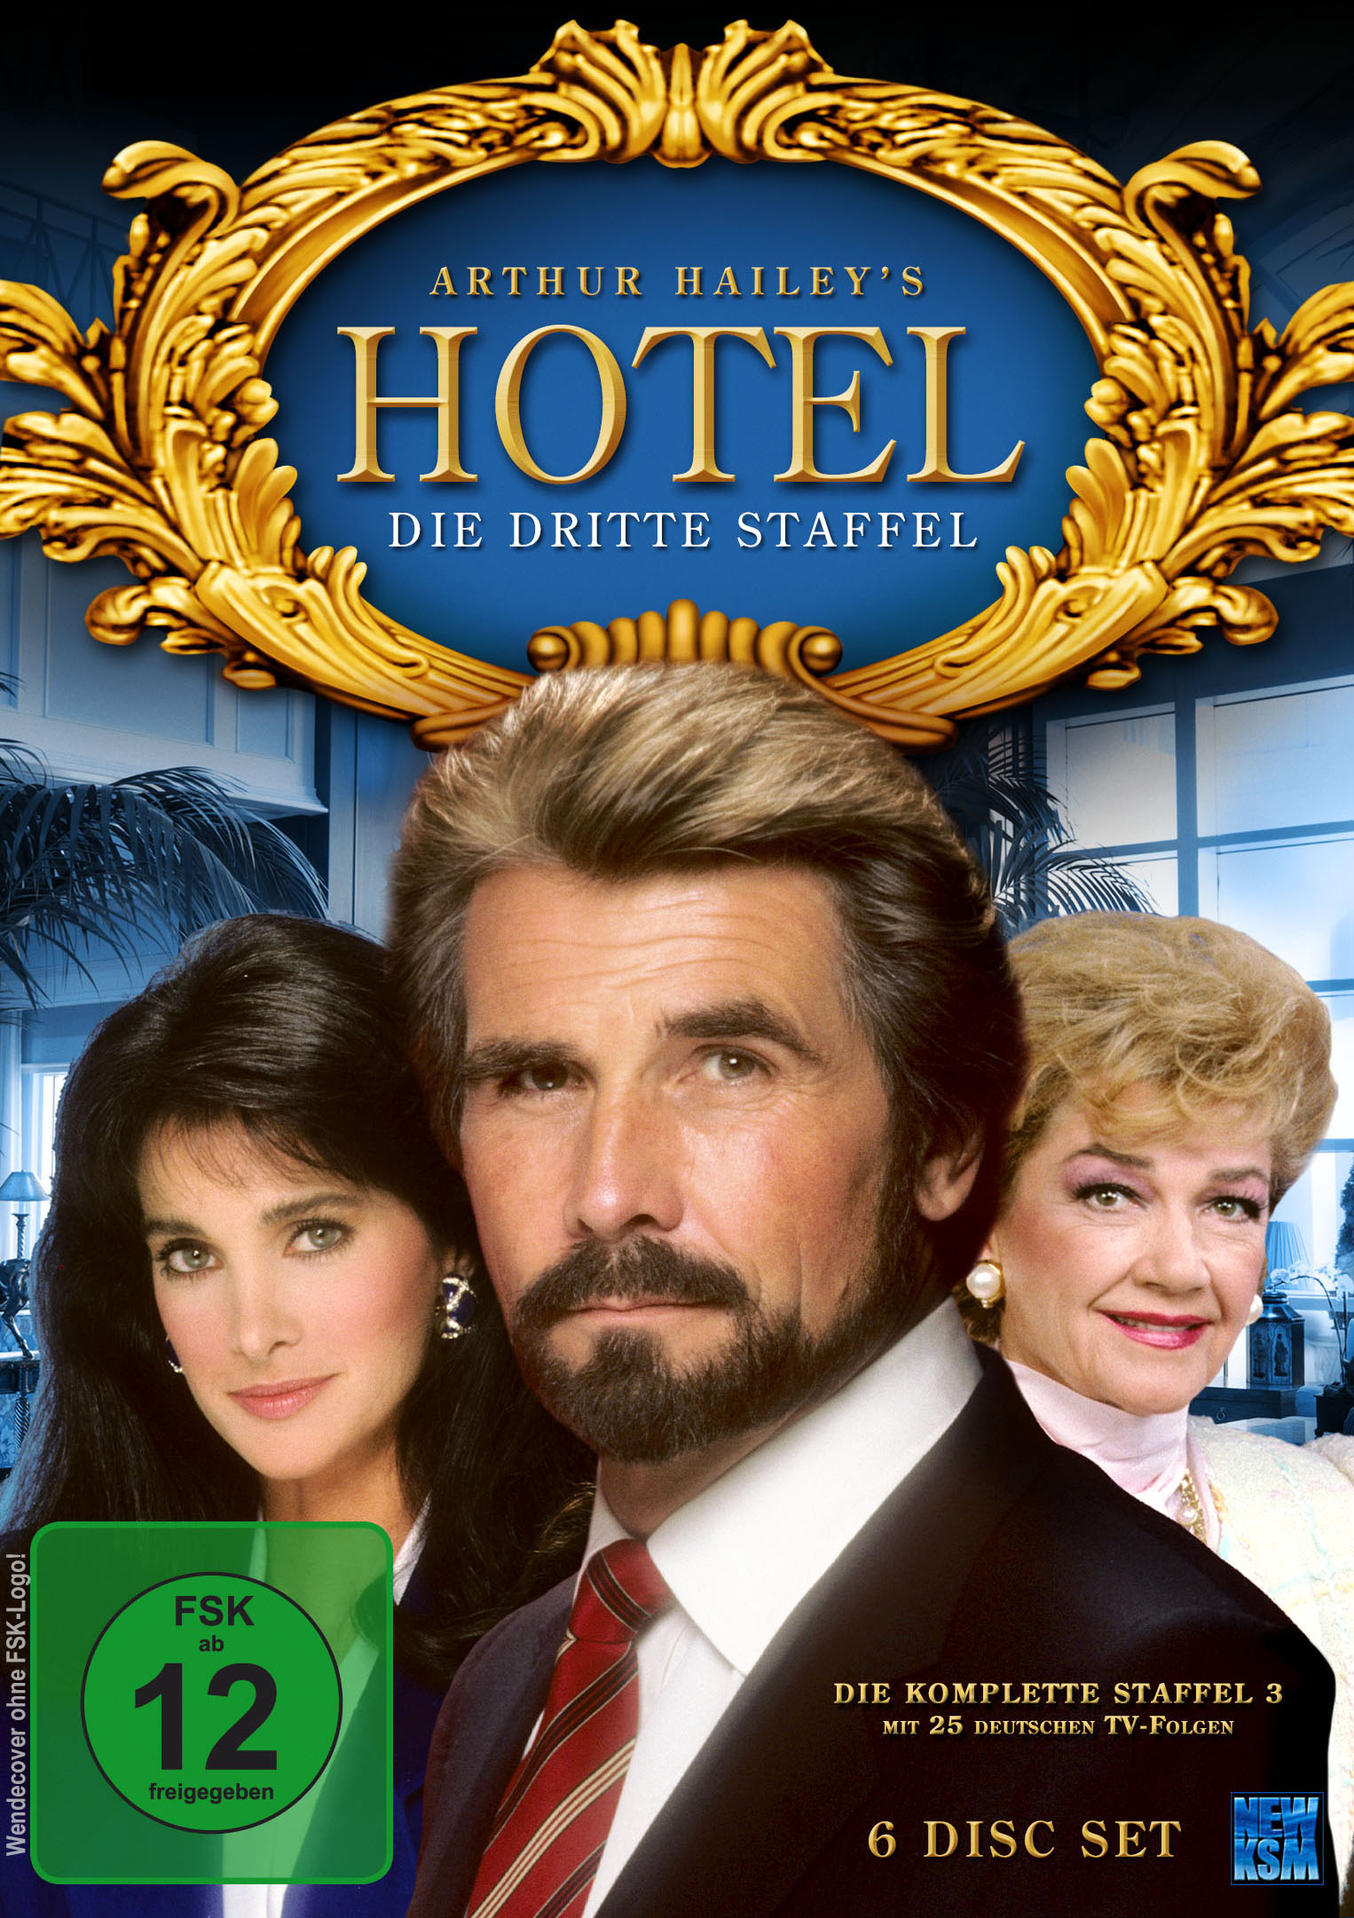 51-75 HOTEL-STAFFEL EPISODE 3: DVD